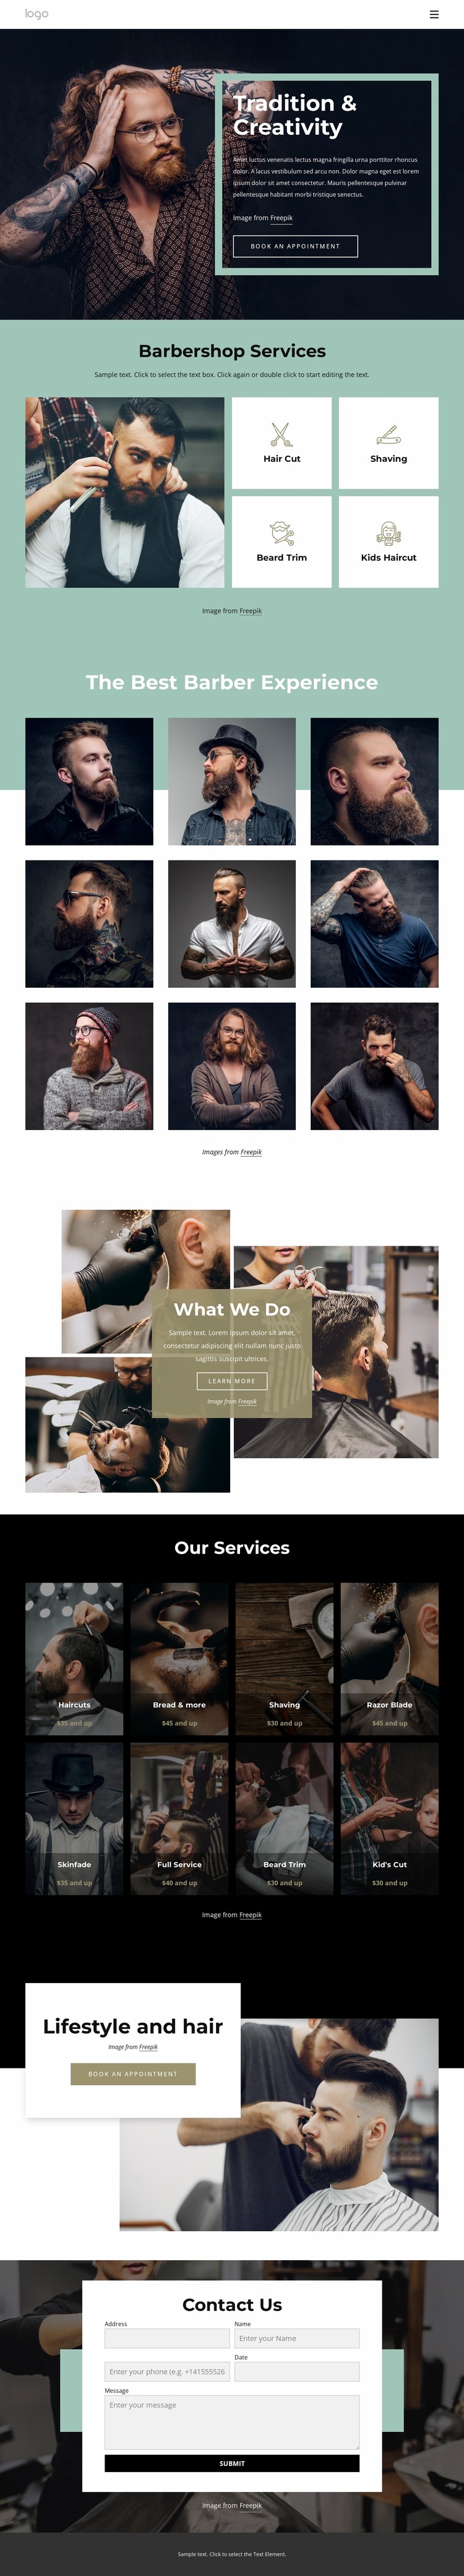 Public barber salon Landing Page